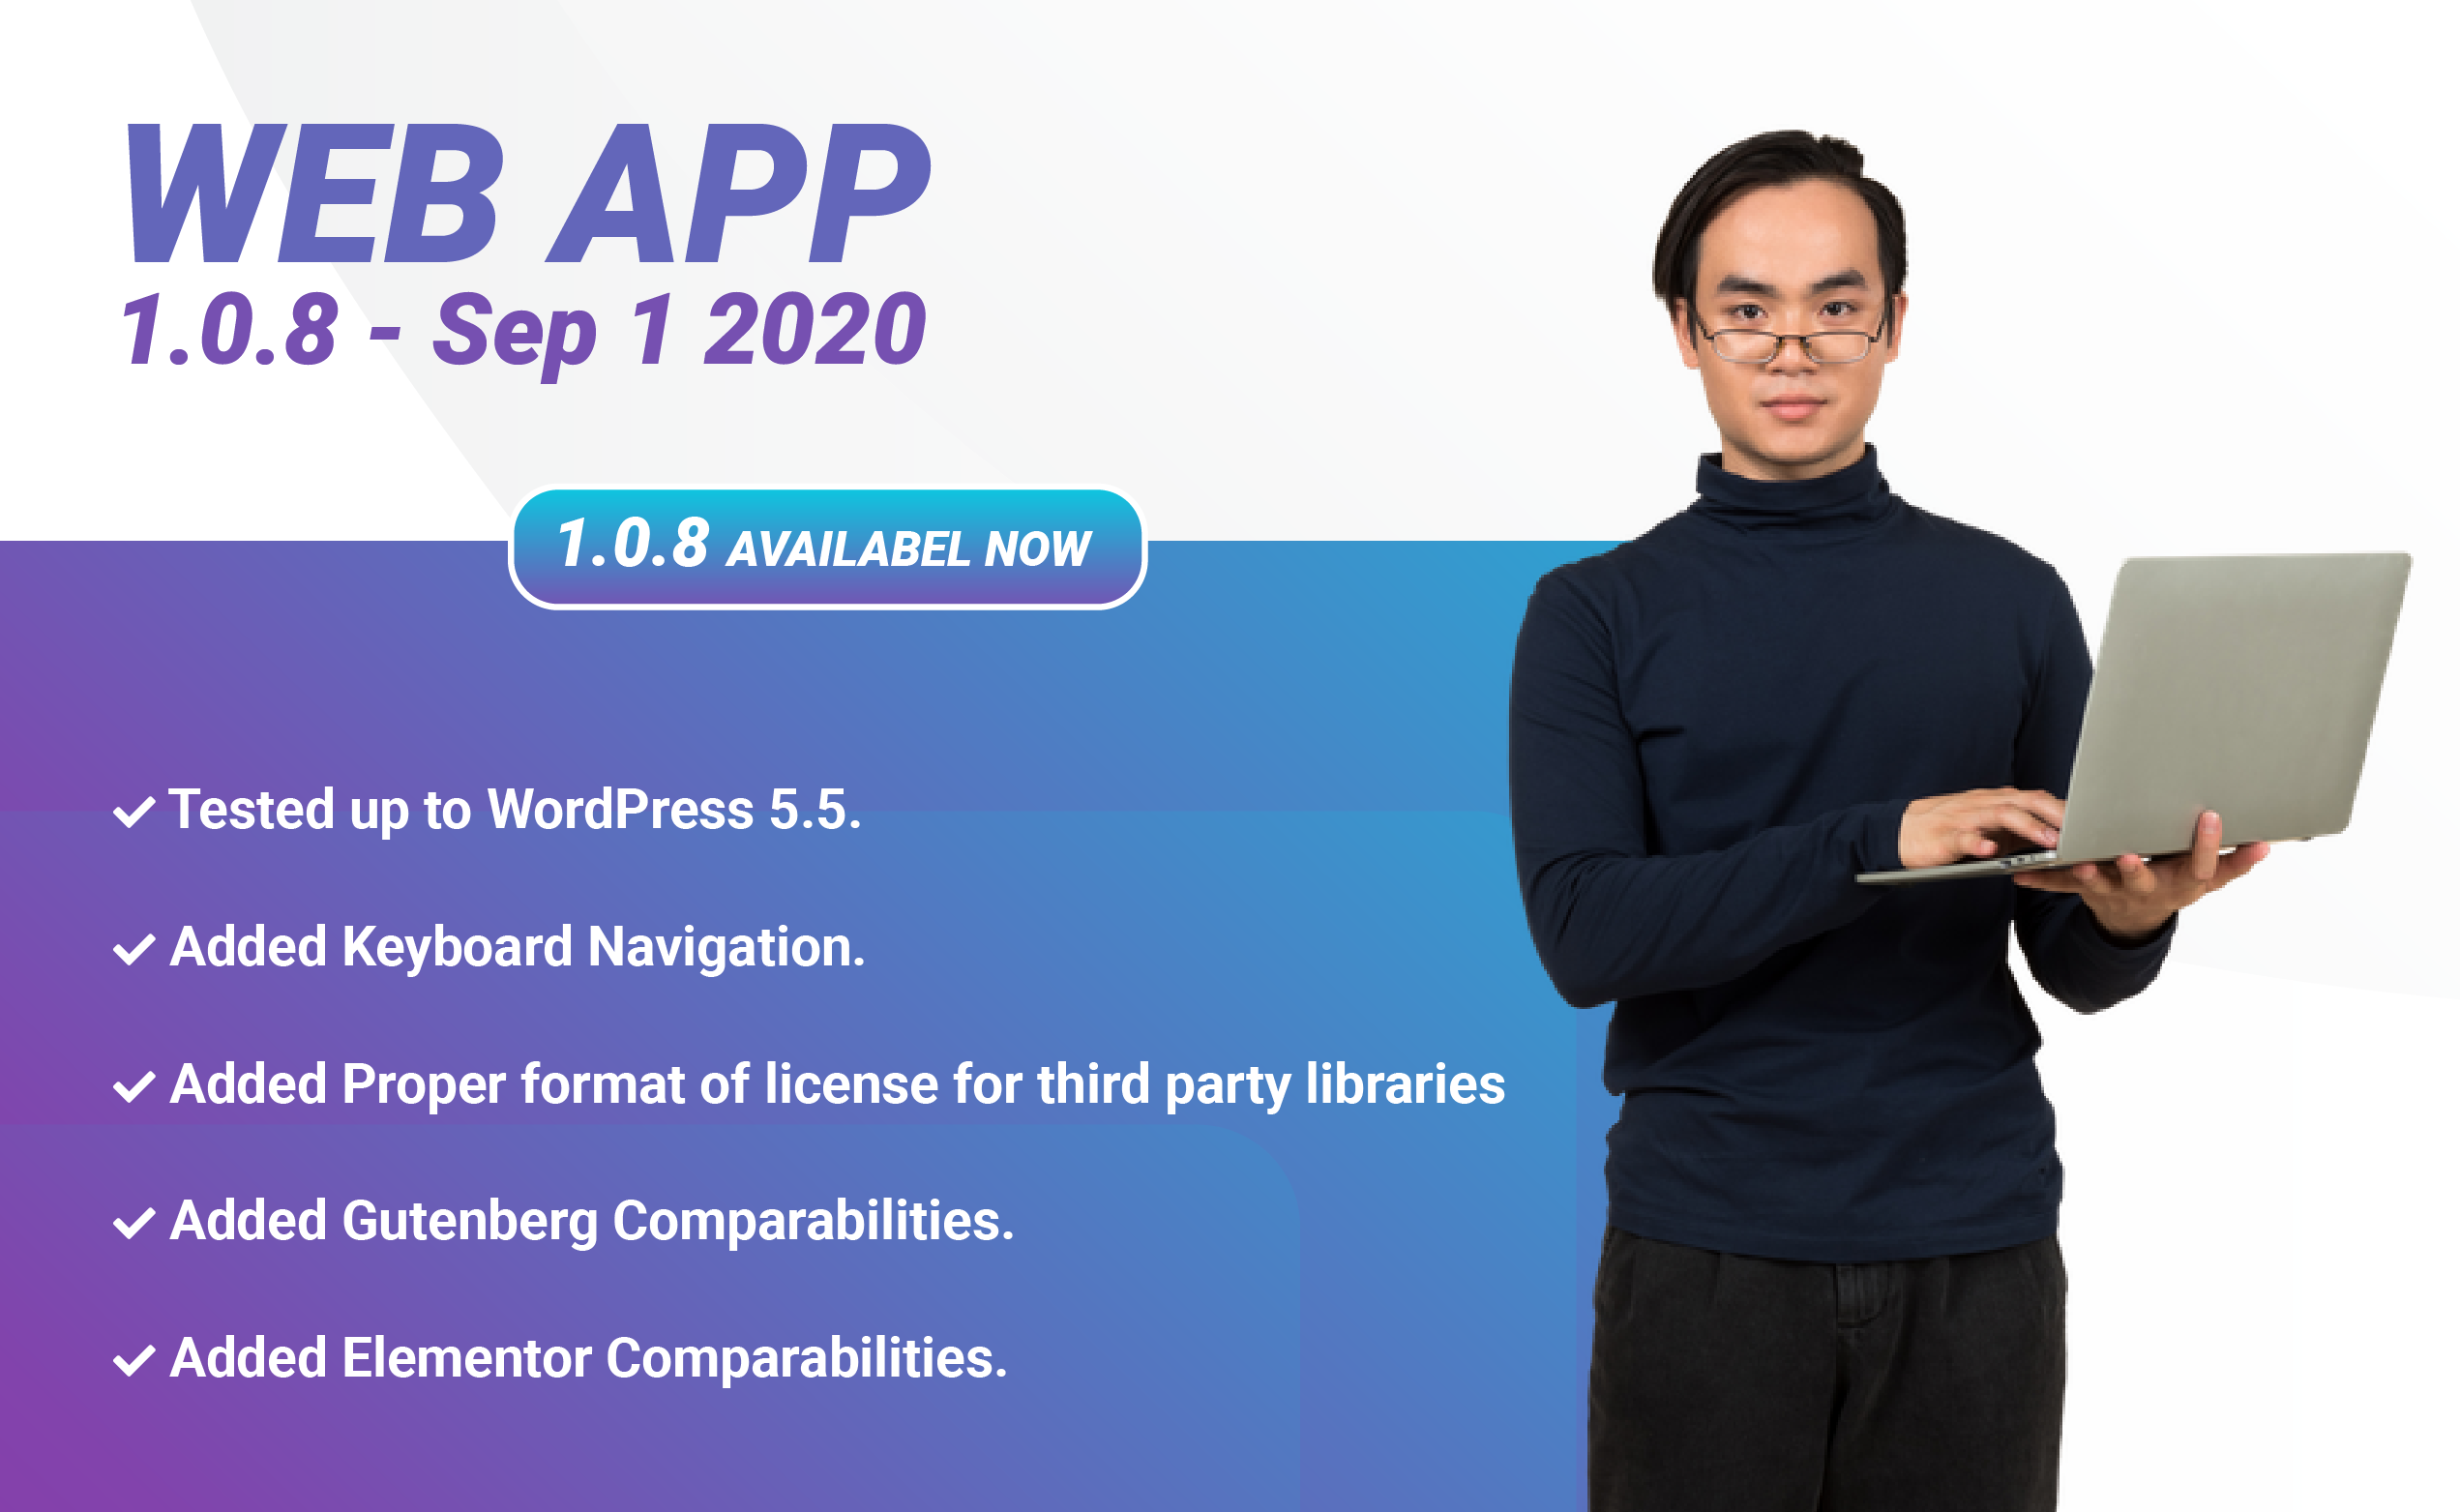 Web App 1.0.8